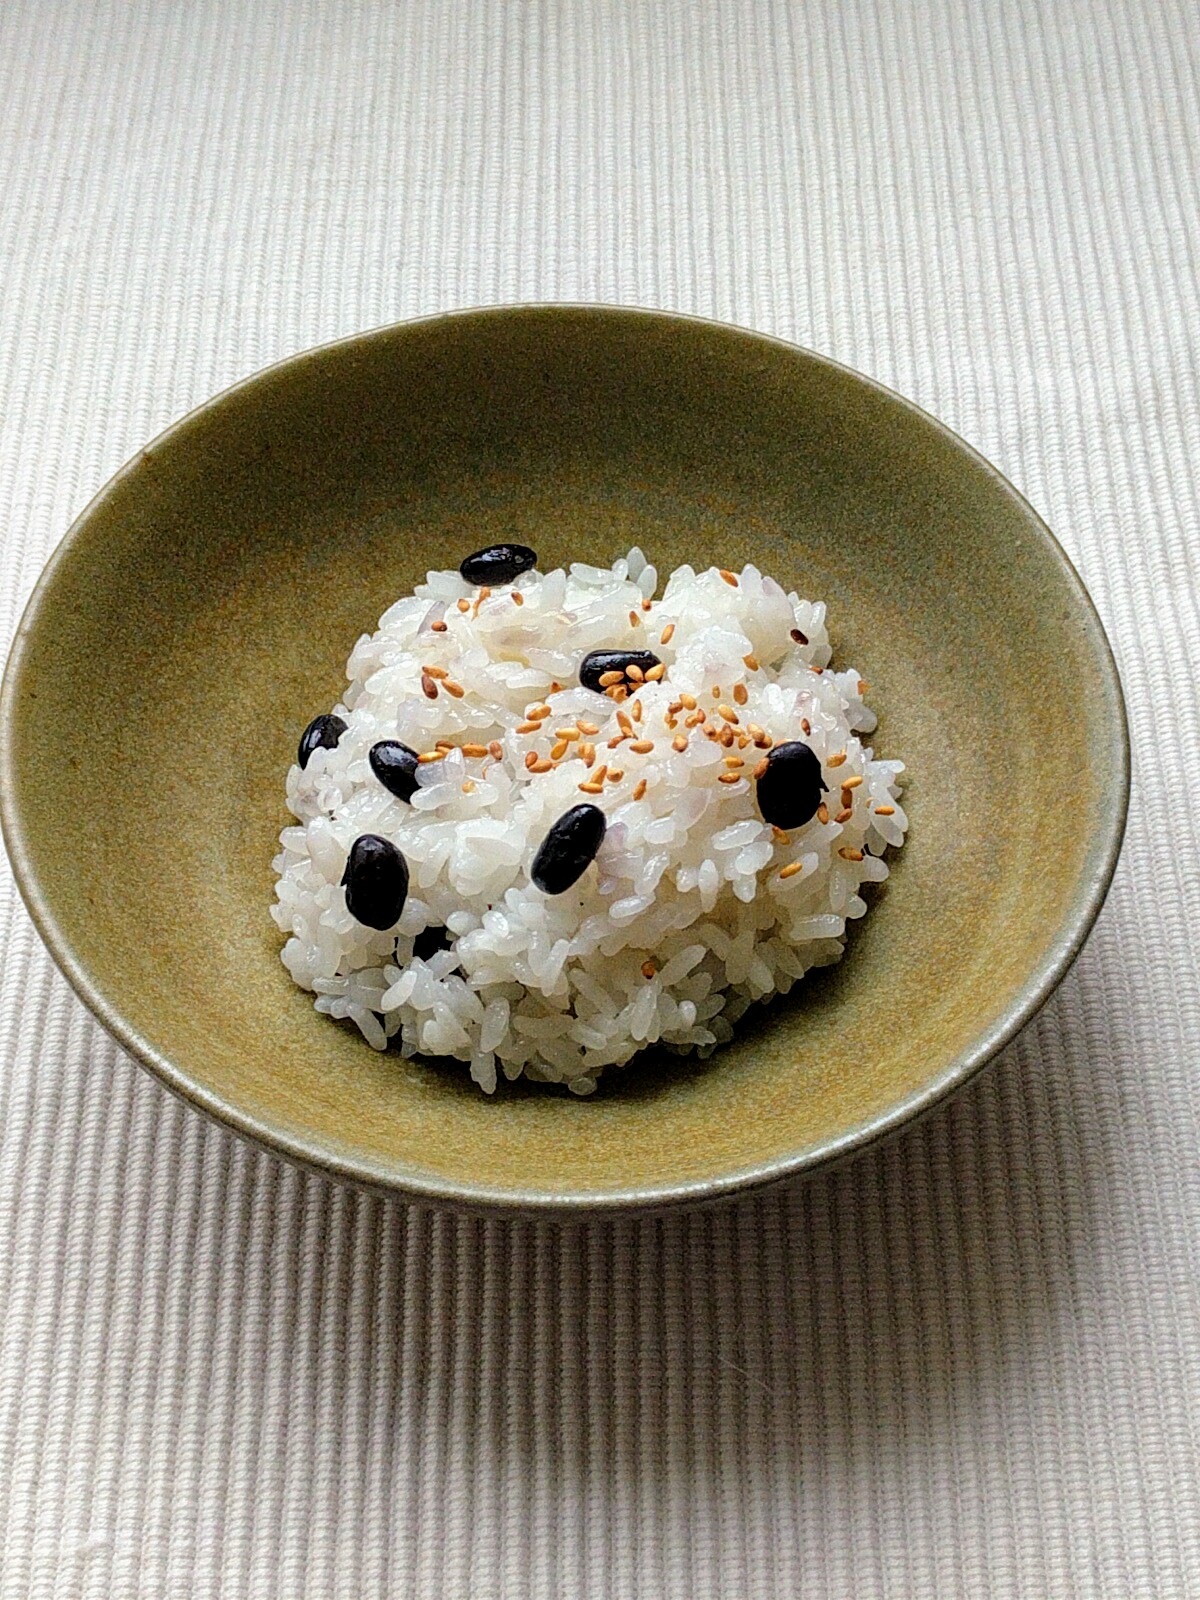 8月15日 黒飯 こくはん を作りました 豆なブログ